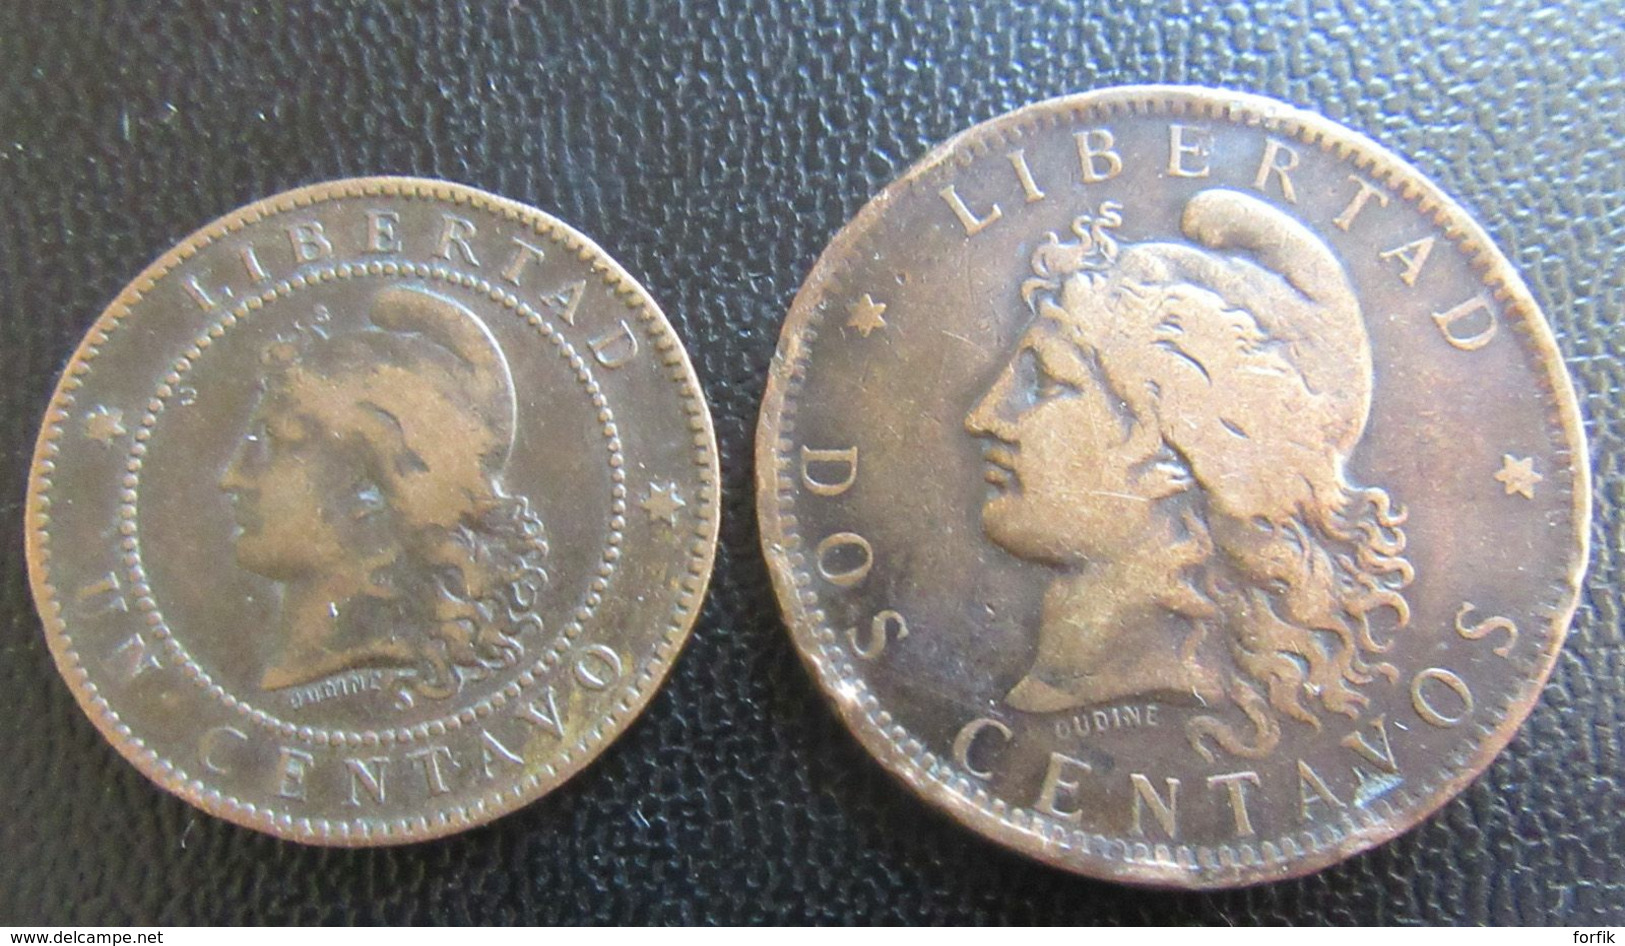 Argentine, Pérou, Haïti, Uruguay - Petite collection de monnaies entre 1876 et 1944